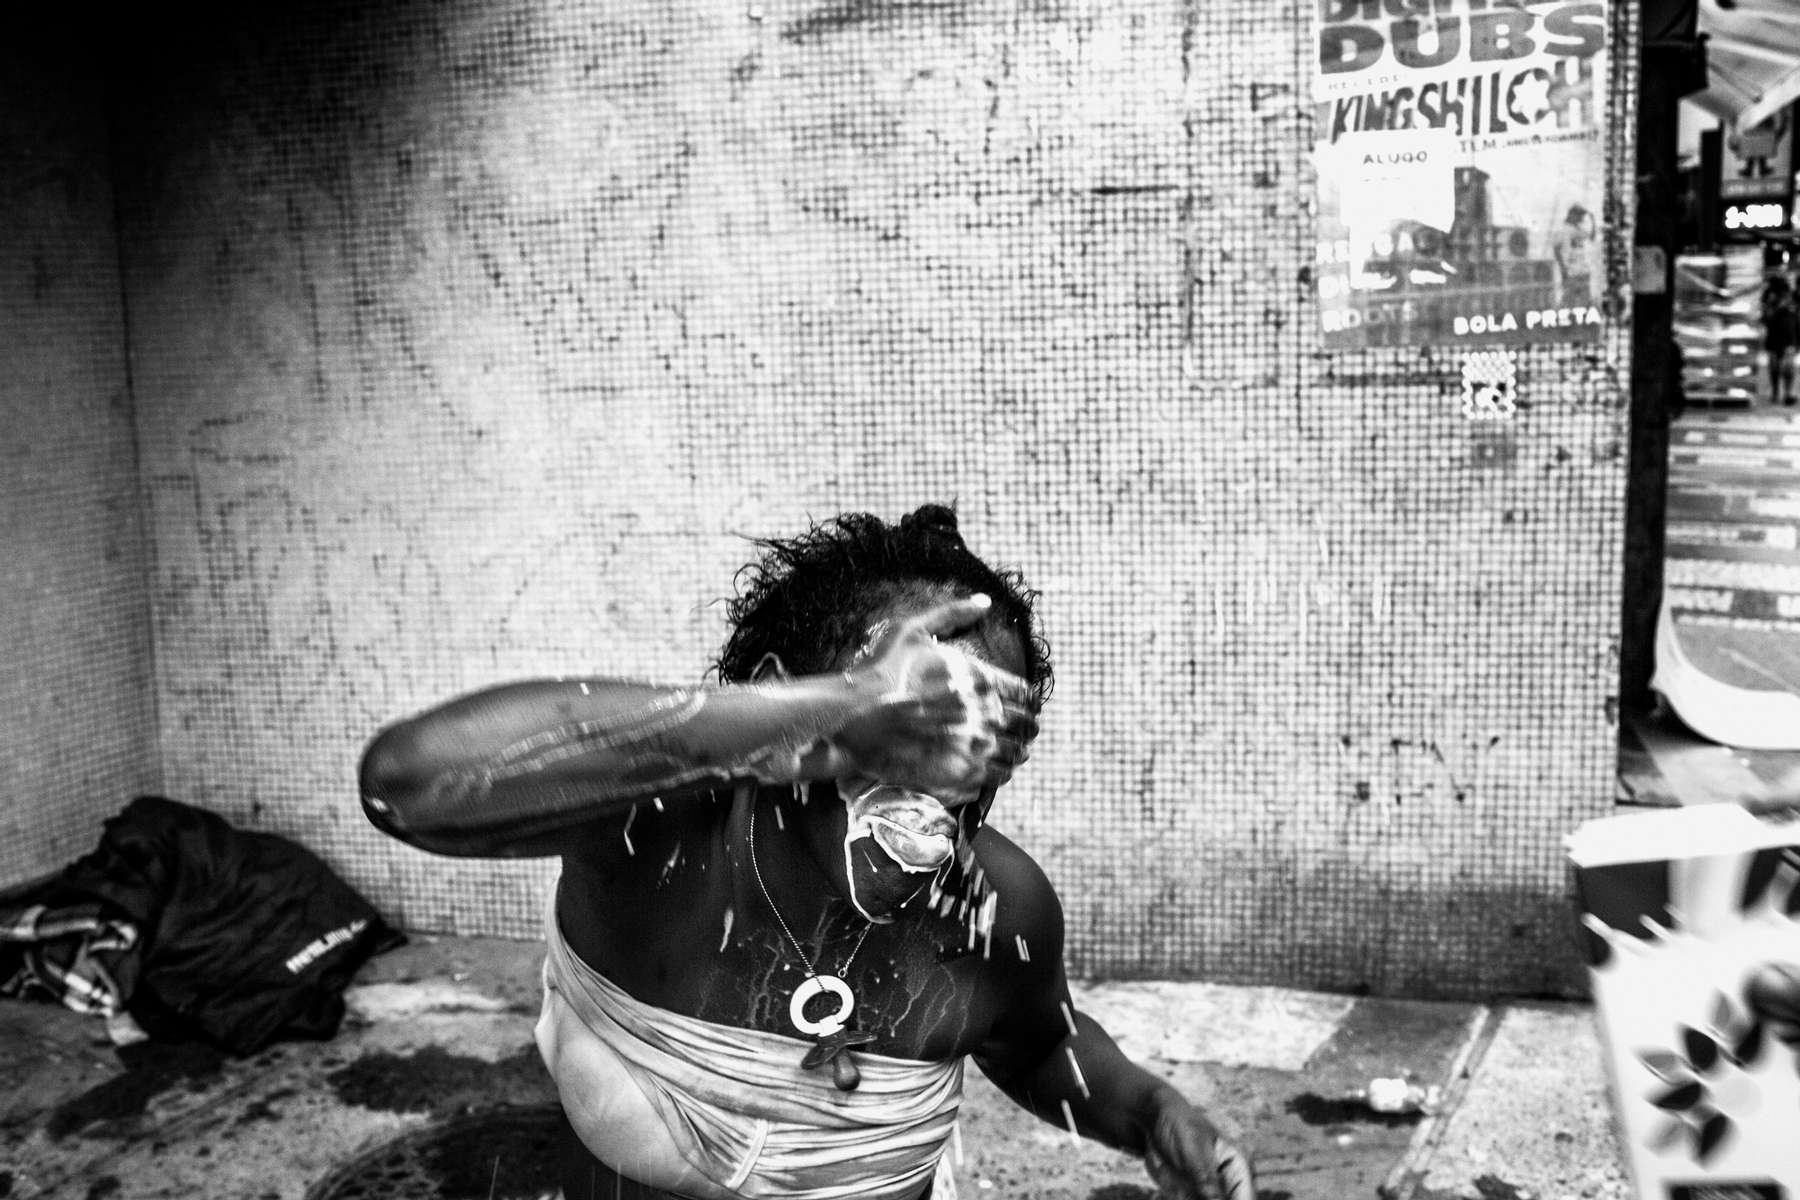 Ingrid Moreira do Santos (22 años & 7 meses de embarazo) vierte leche en su cara después de que un policía militar empape sus ojos con spray de pimienta al negarse a salir de la esquina donde normalmente duerme, en Nossa Sra de Copacabana, en Río de Janeiro , Brasil, 01 de junio de 2016.